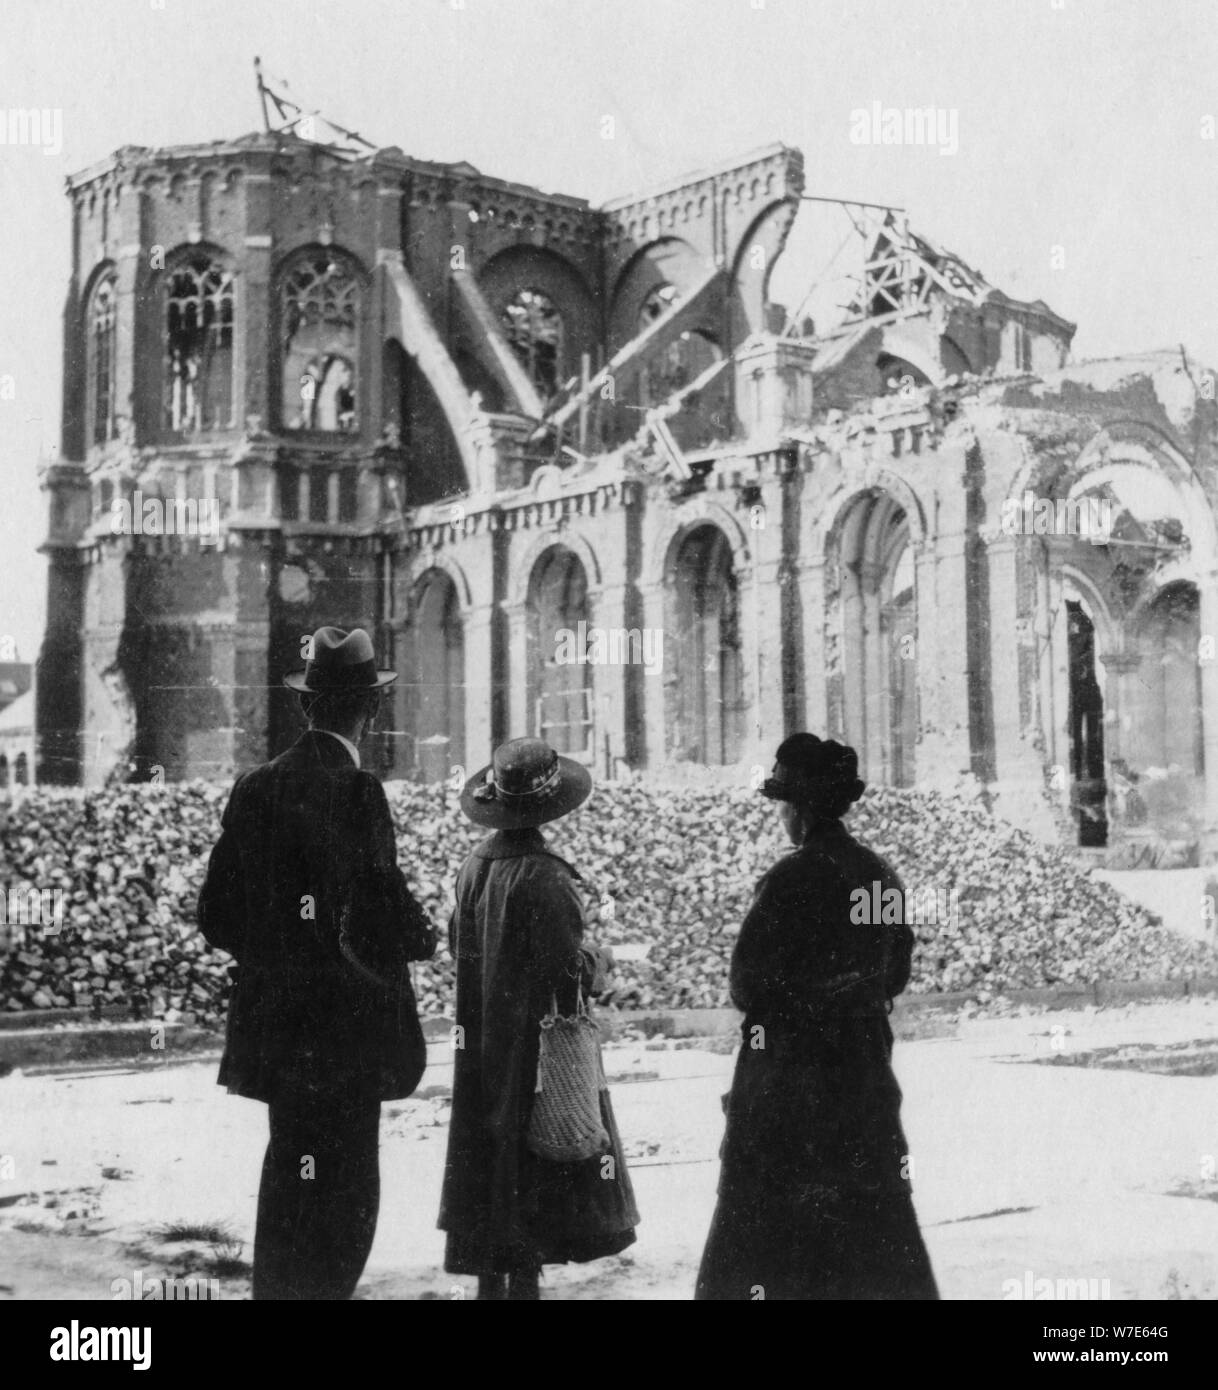 Schäden an der Kirche von Notre Dame, Mary, Frankreich, Weltkrieg I, c 1914 - c 1918. Artist: Nachtigall & Co. Stockfoto